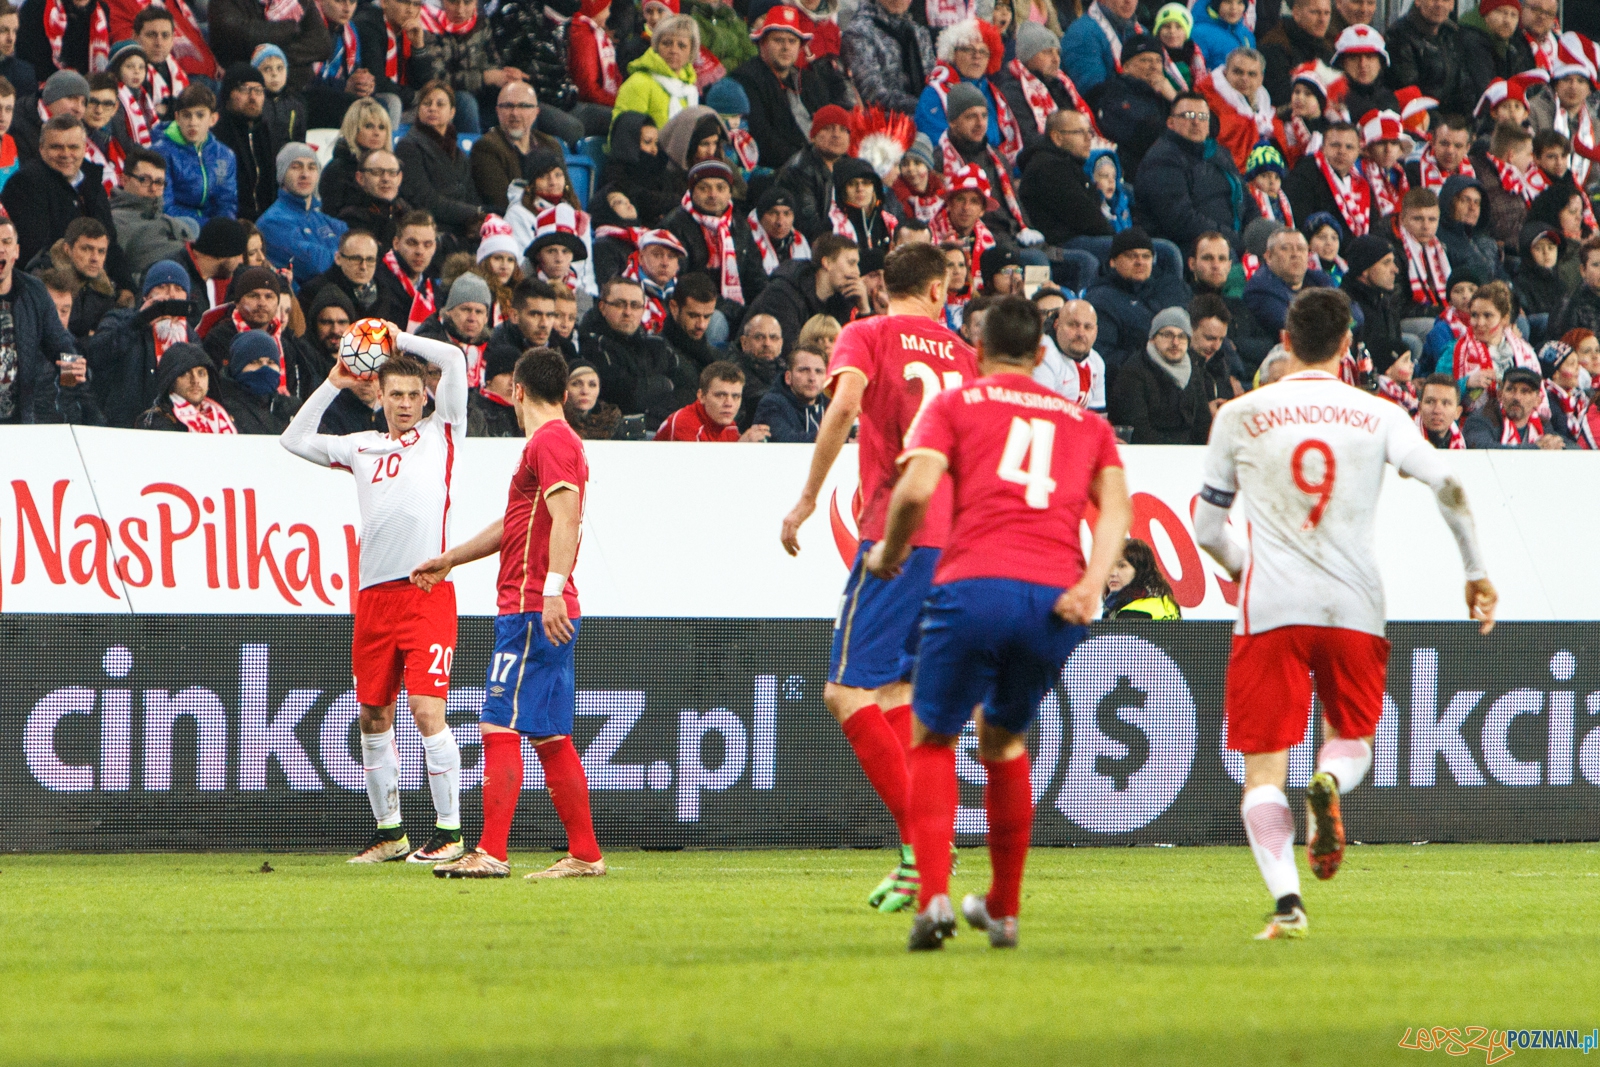 Mecz towarzyski: Polska - Serbia 1:0 - Poznań 23.03.2016 r.  Foto: LepszyPOZNAN.pl / Paweł Rychter